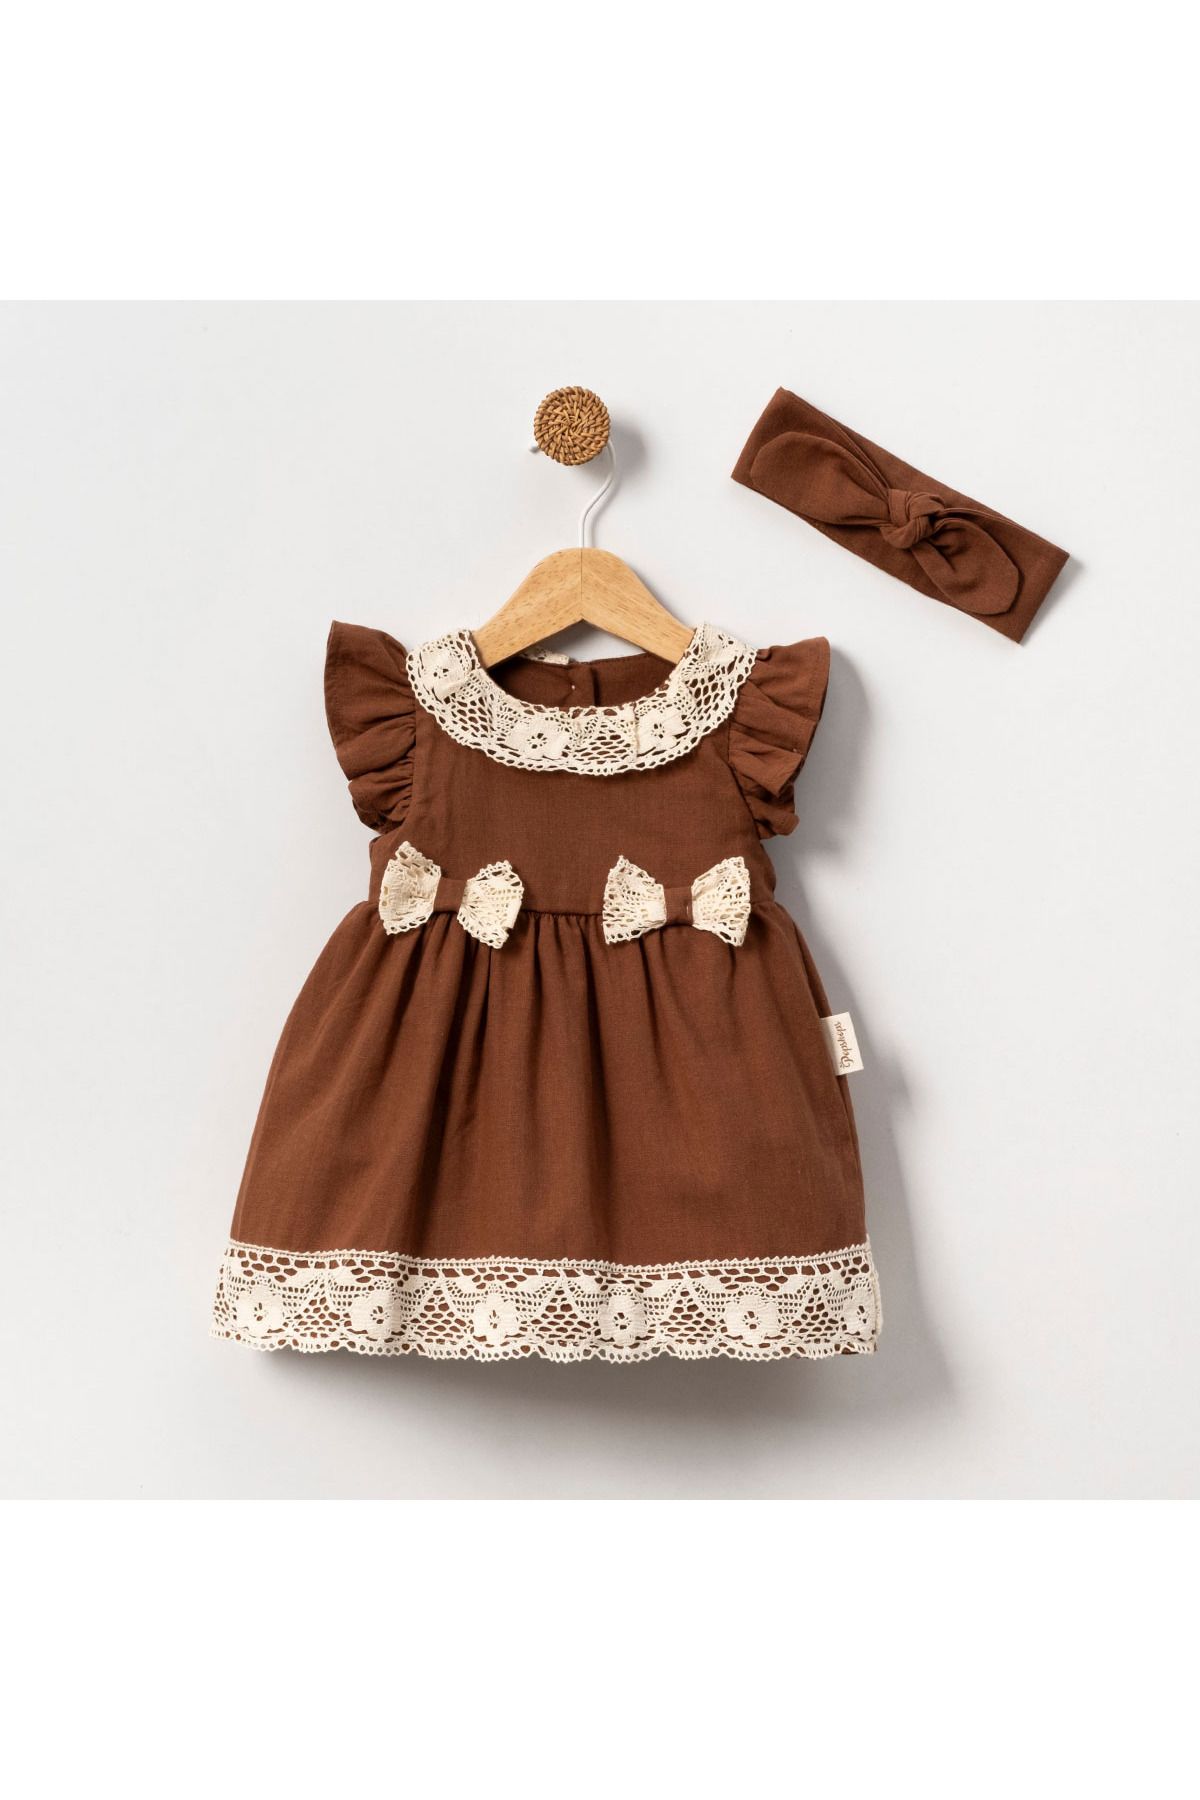 DIDuStore Vintage Dantel Yaka Detaylı Kız Bebek Elbise ve Bandı Seti